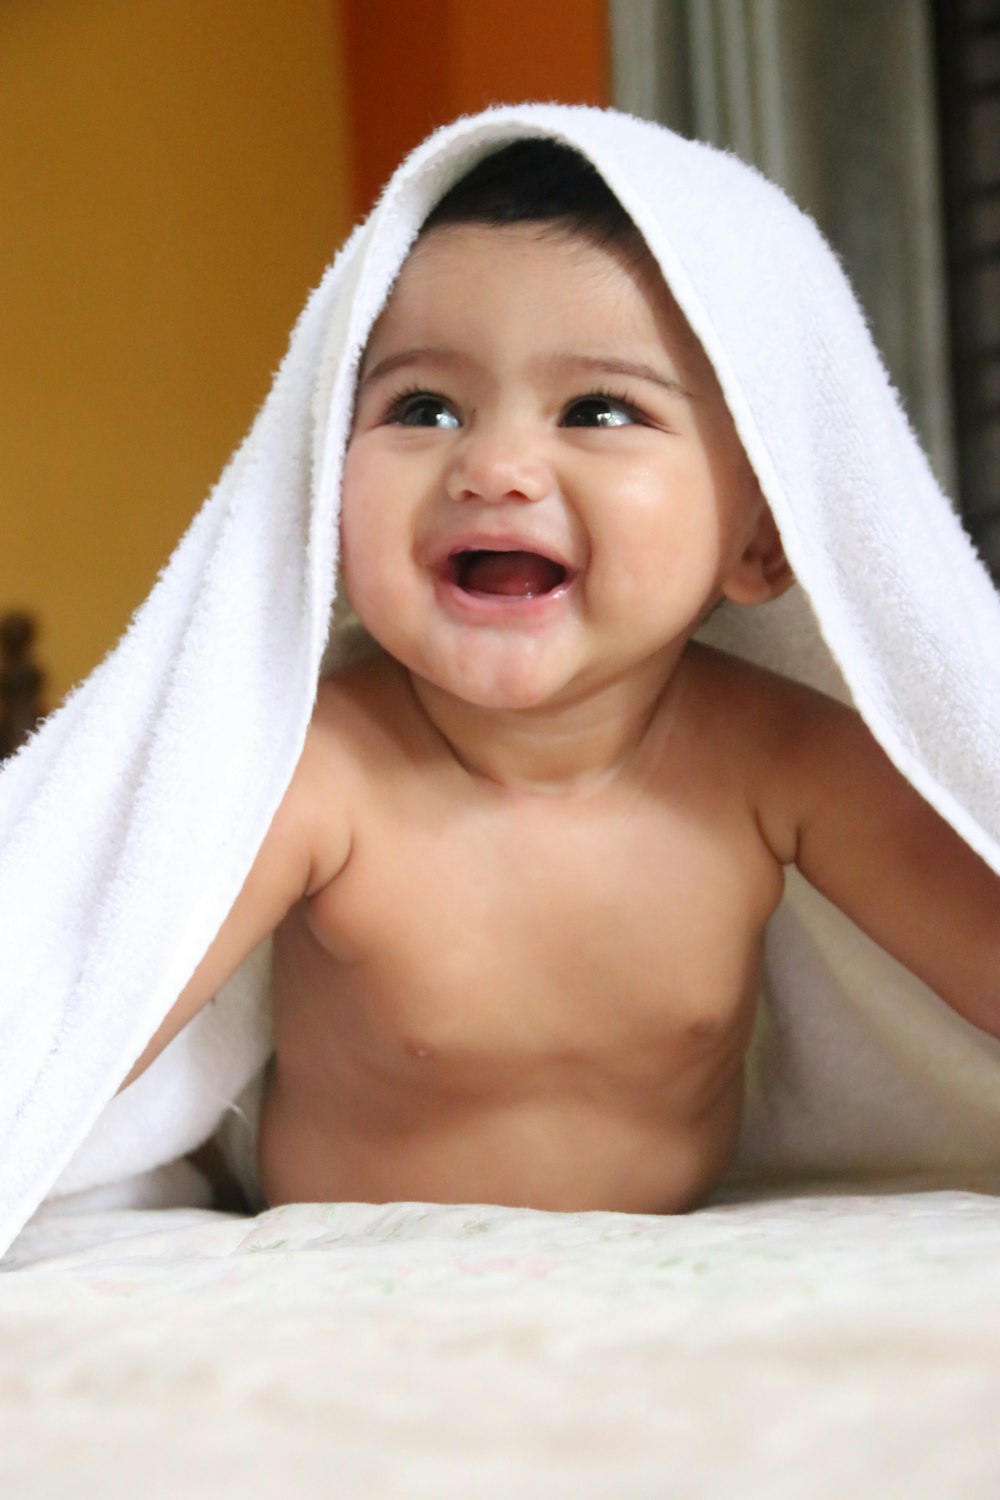 enfant aux seins nus recouvert d’une serviette blanche